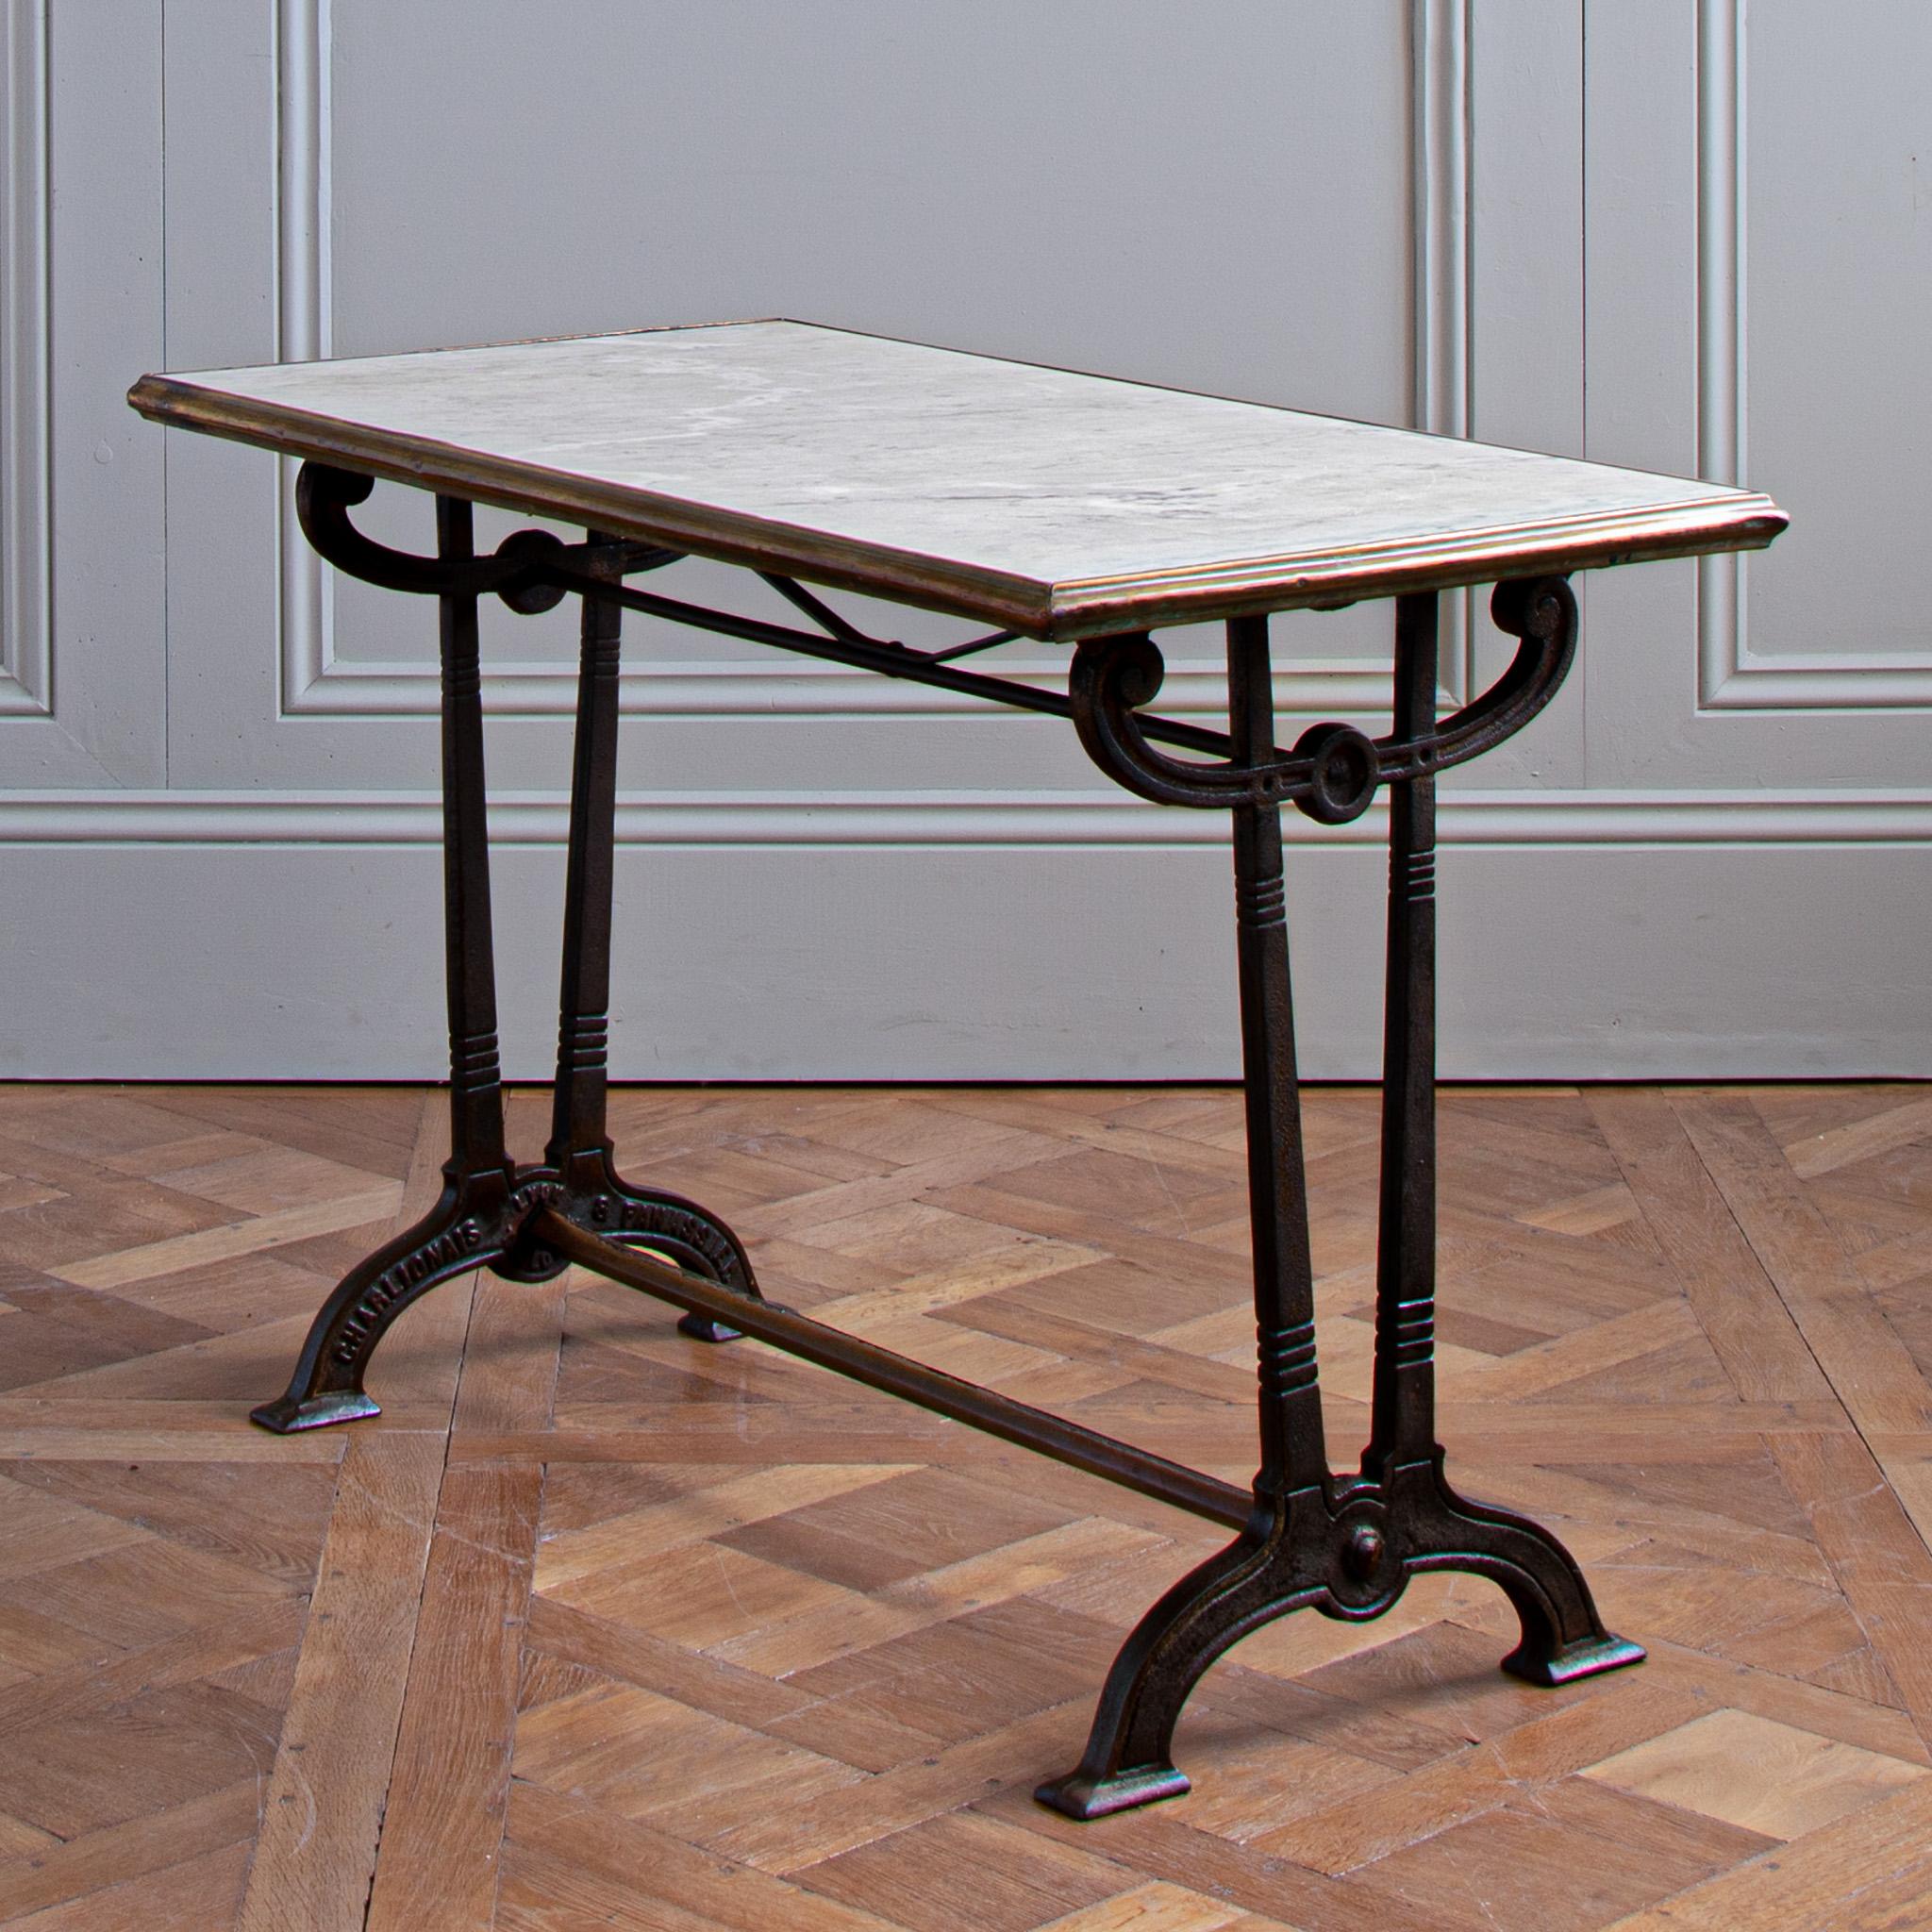 Cette table de bistrot française Art nouveau de Charlionais & Panassier, vers 1900, est une véritable trouvaille. La base en fonte a une forme qui rappelle les panneaux du métro parisien de la même époque. Bien conçue et magnifiquement réalisée,